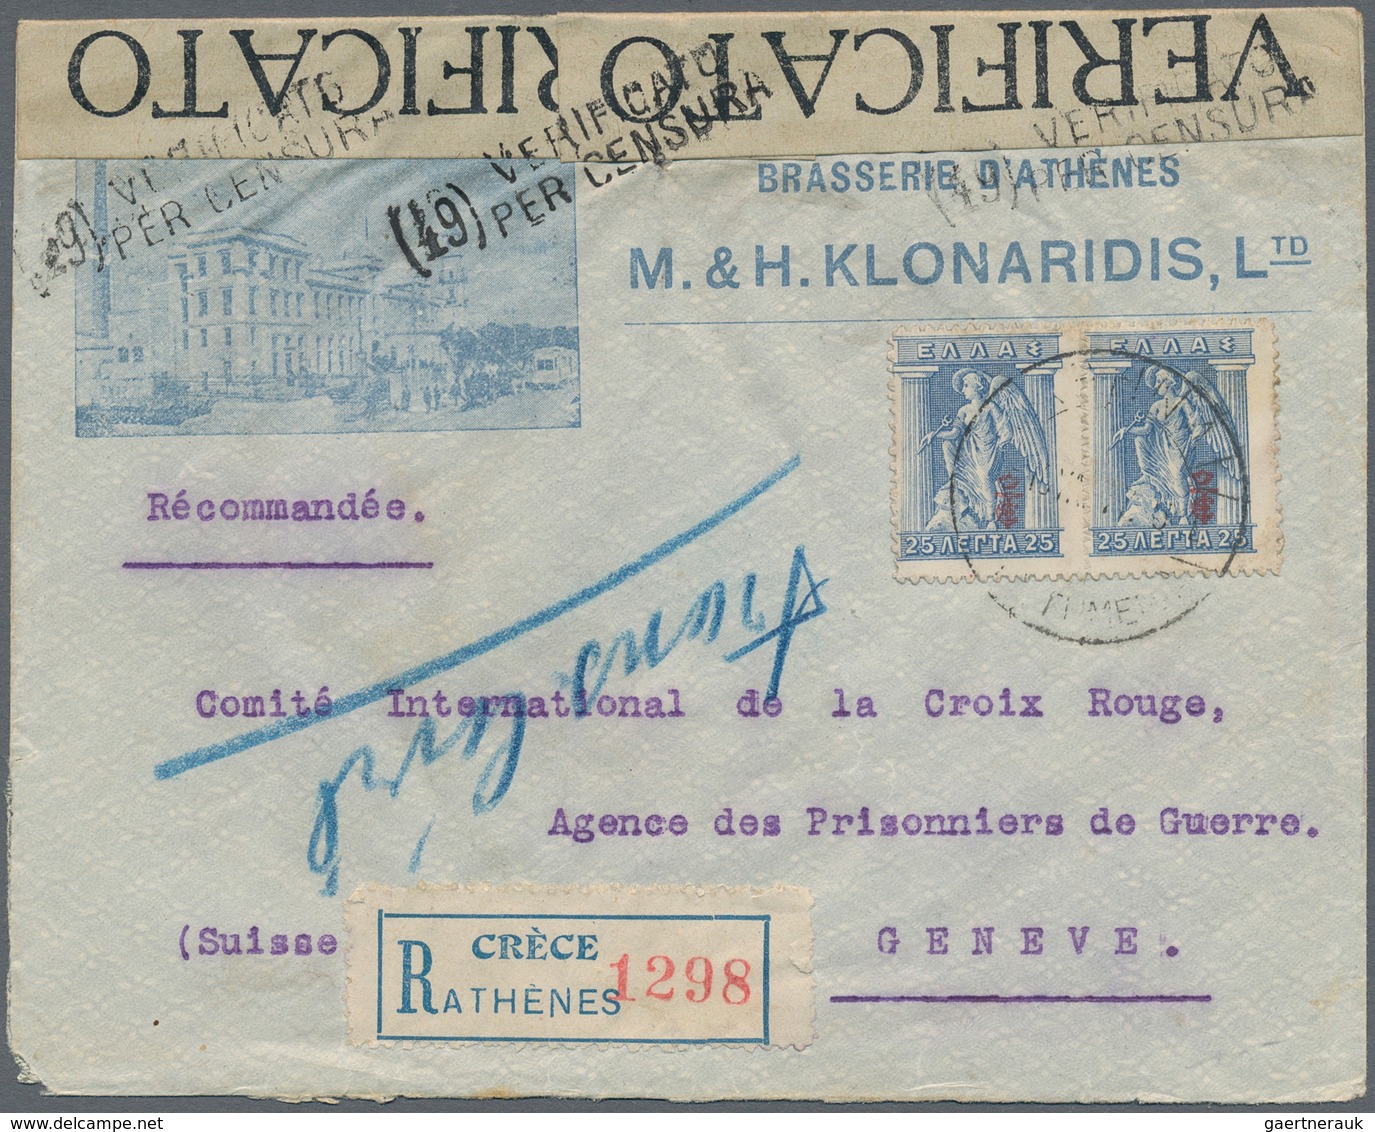 Griechenland: 1886 - 1960 (ca.), Posten von über 80 Belegen, dabei Samos, Zensur WK I., Kreta nach U